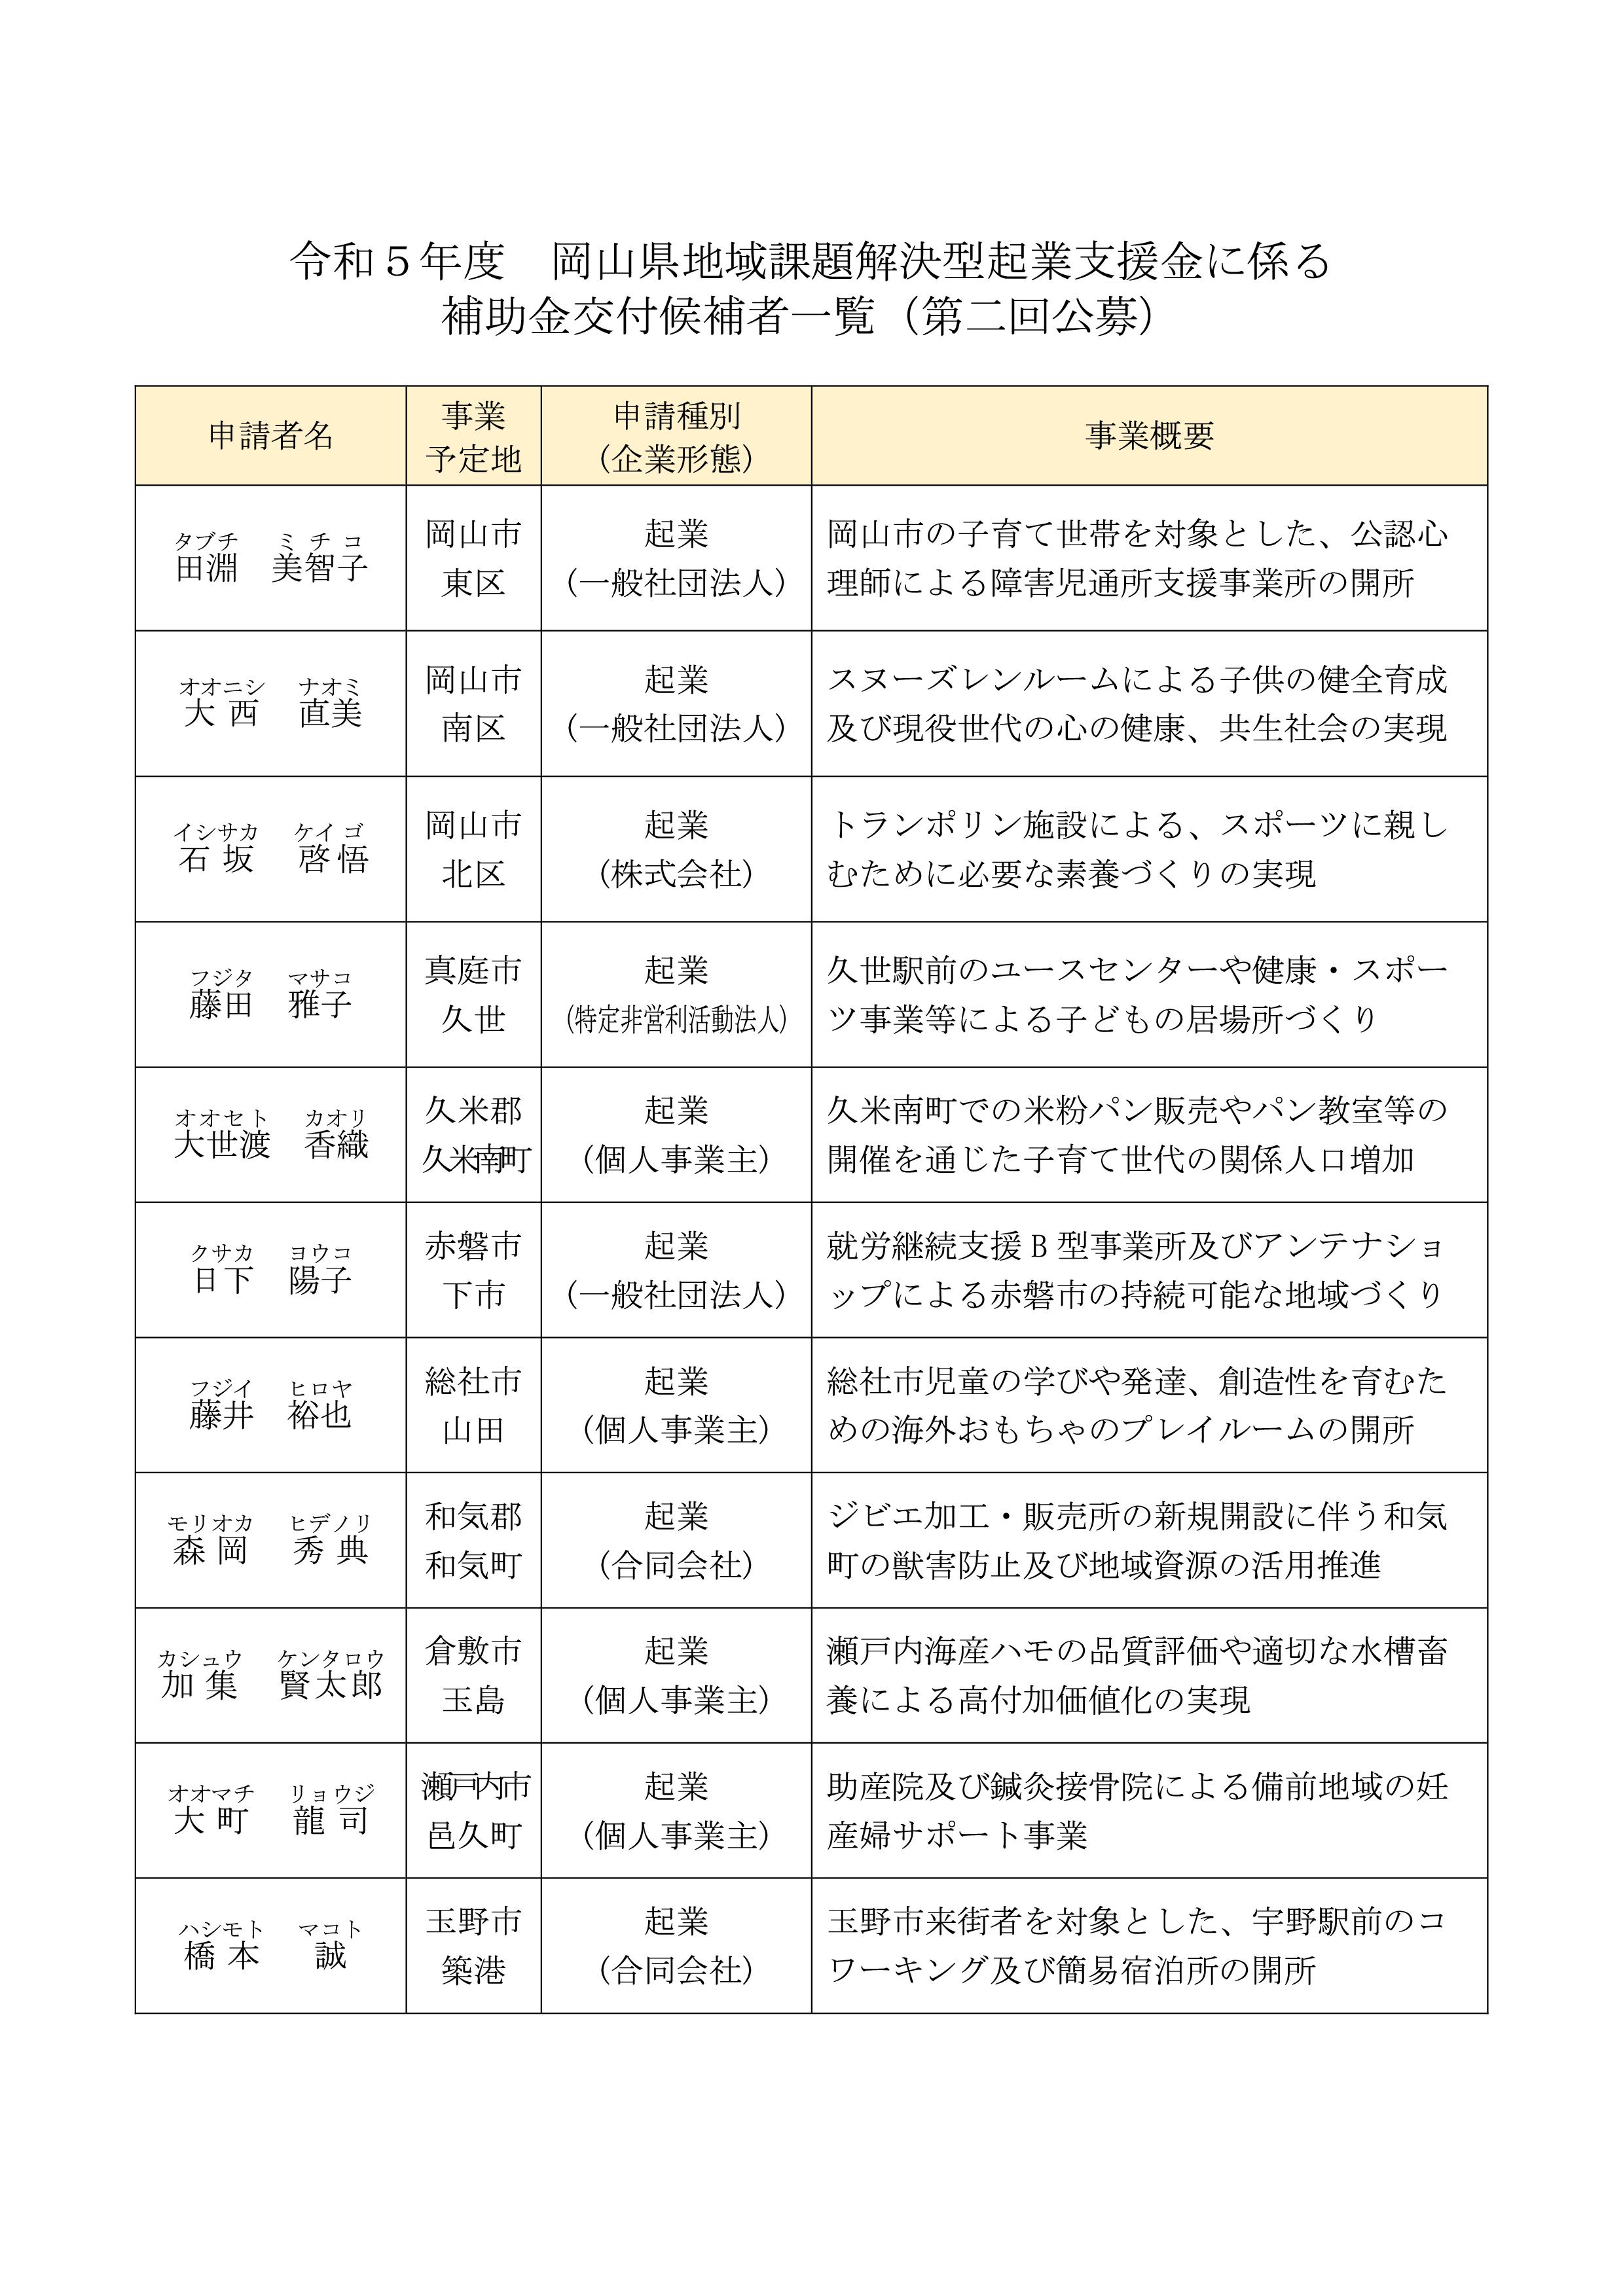 令和５年度岡山県地域課題解決型起業支援金（第二回公募）の審査結果について